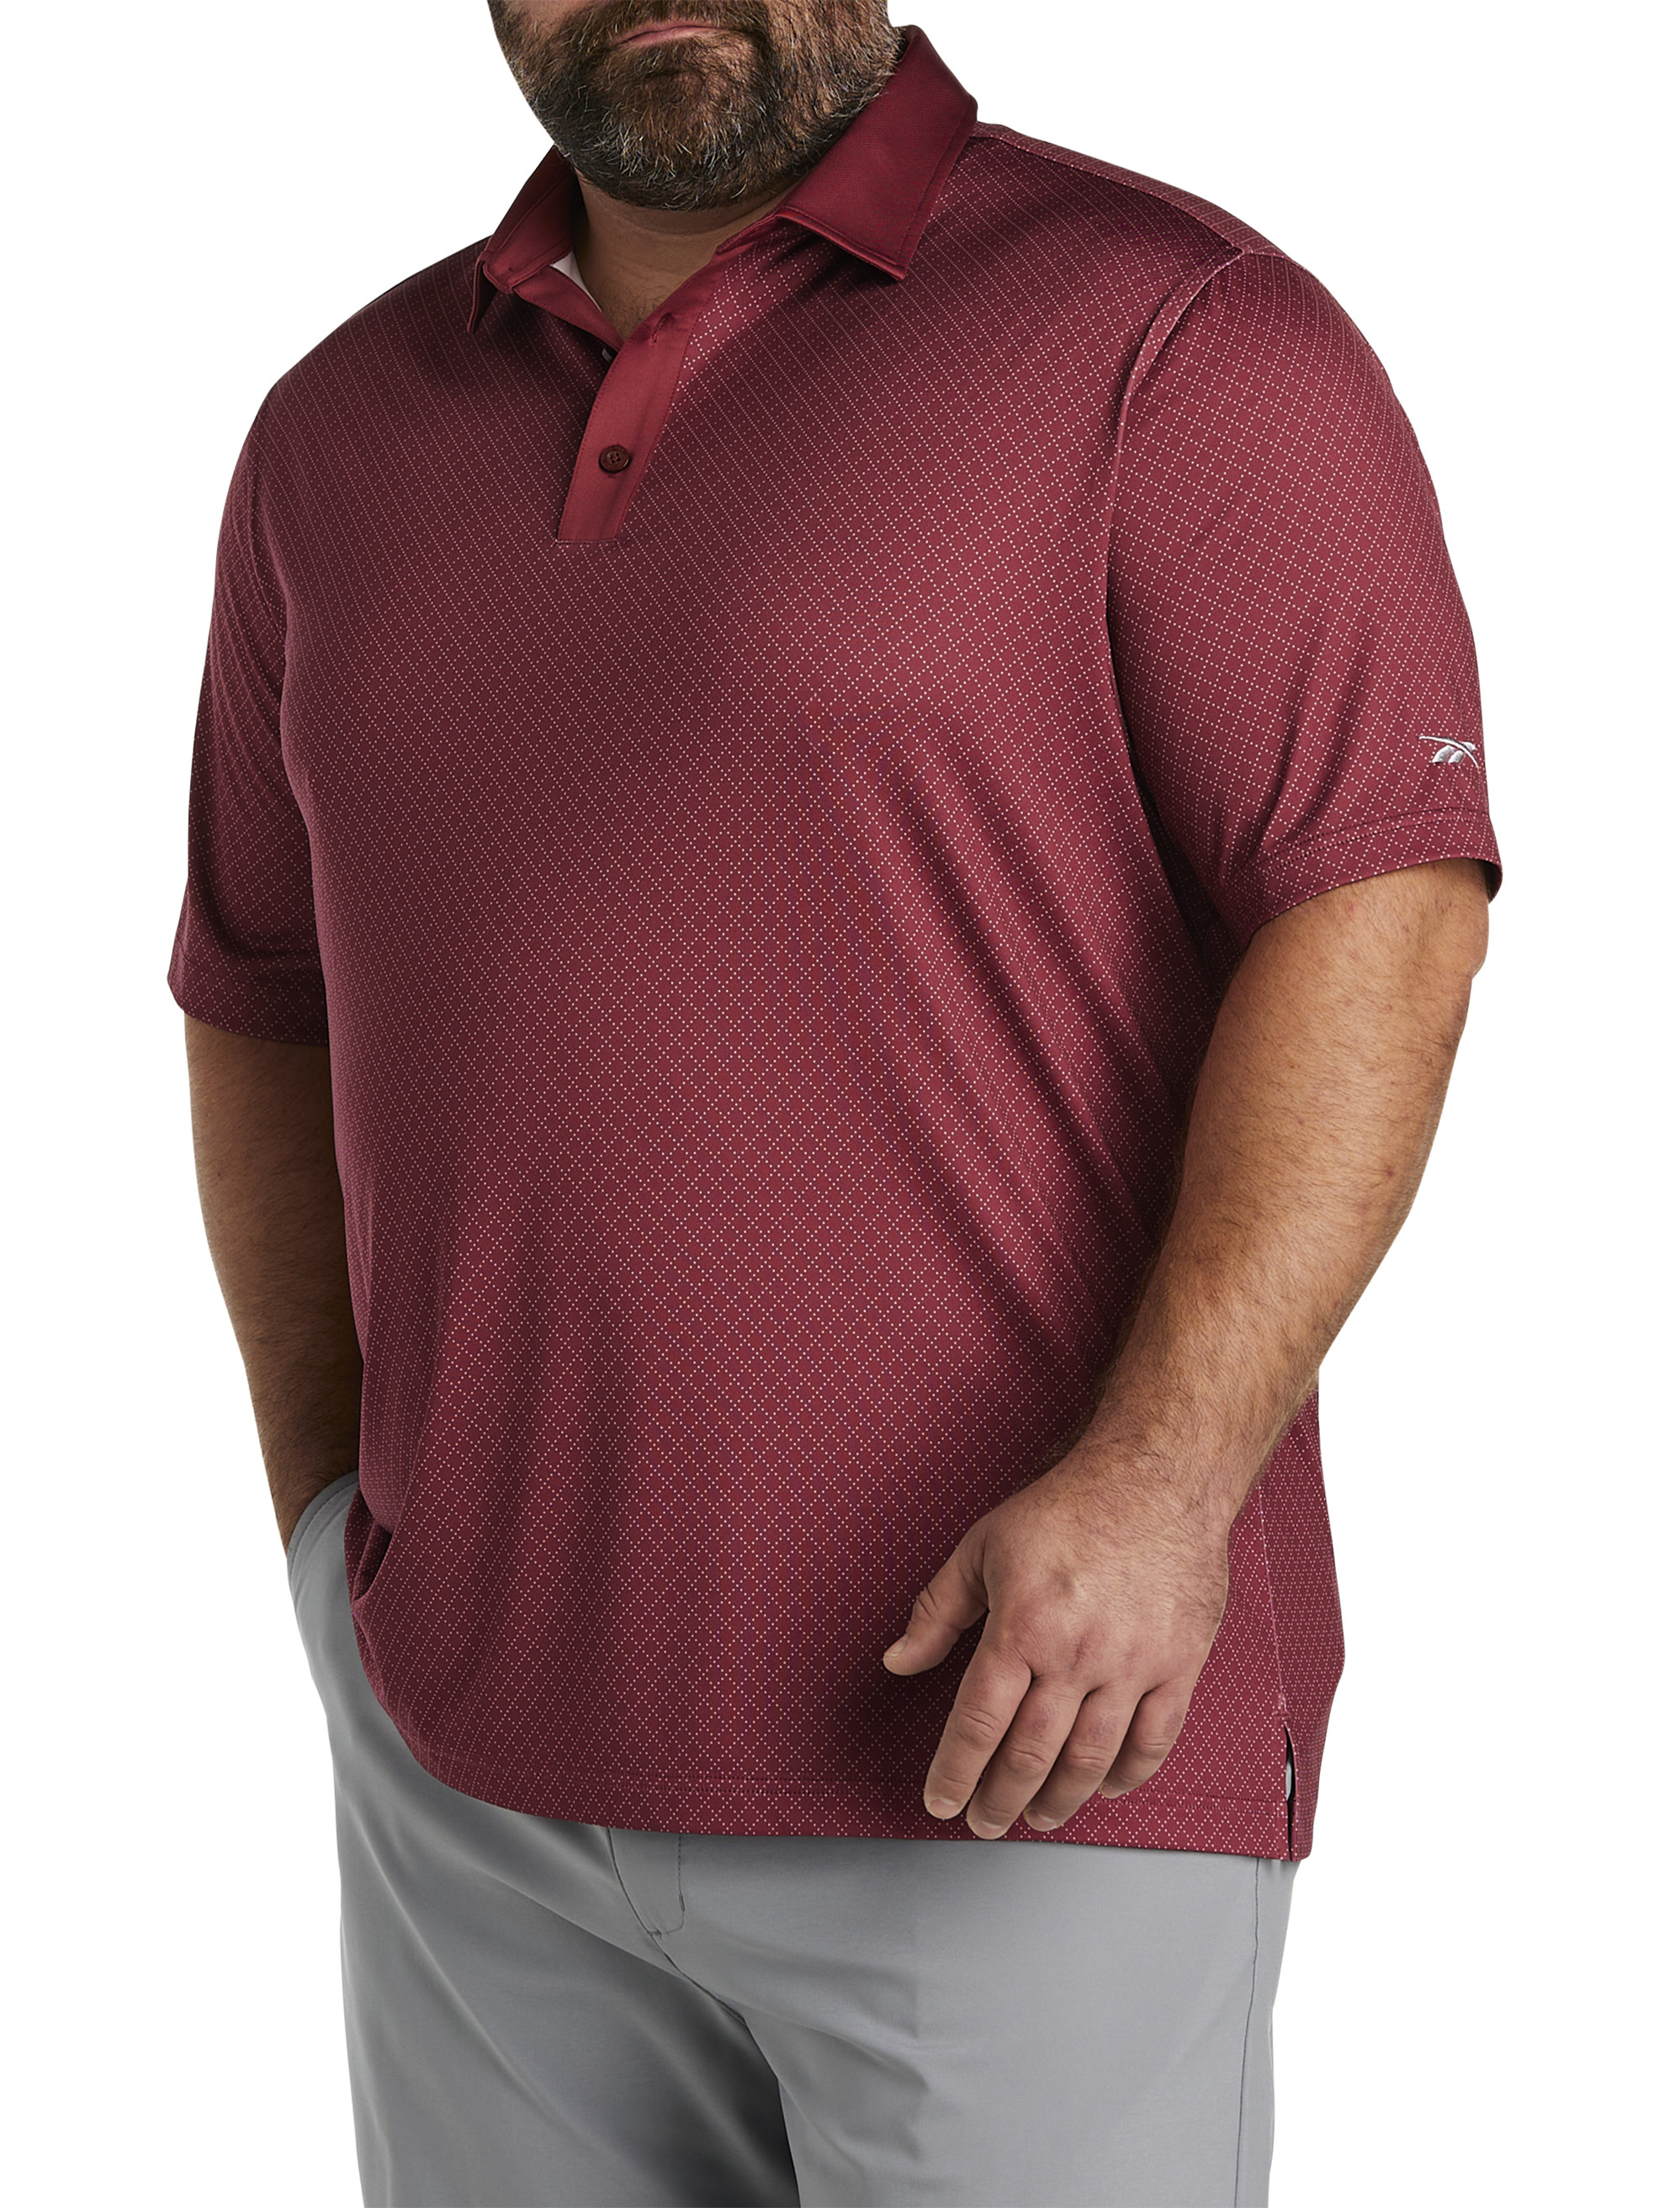 Big & Tall Golf Shirts, Big & Tall Golf Polos